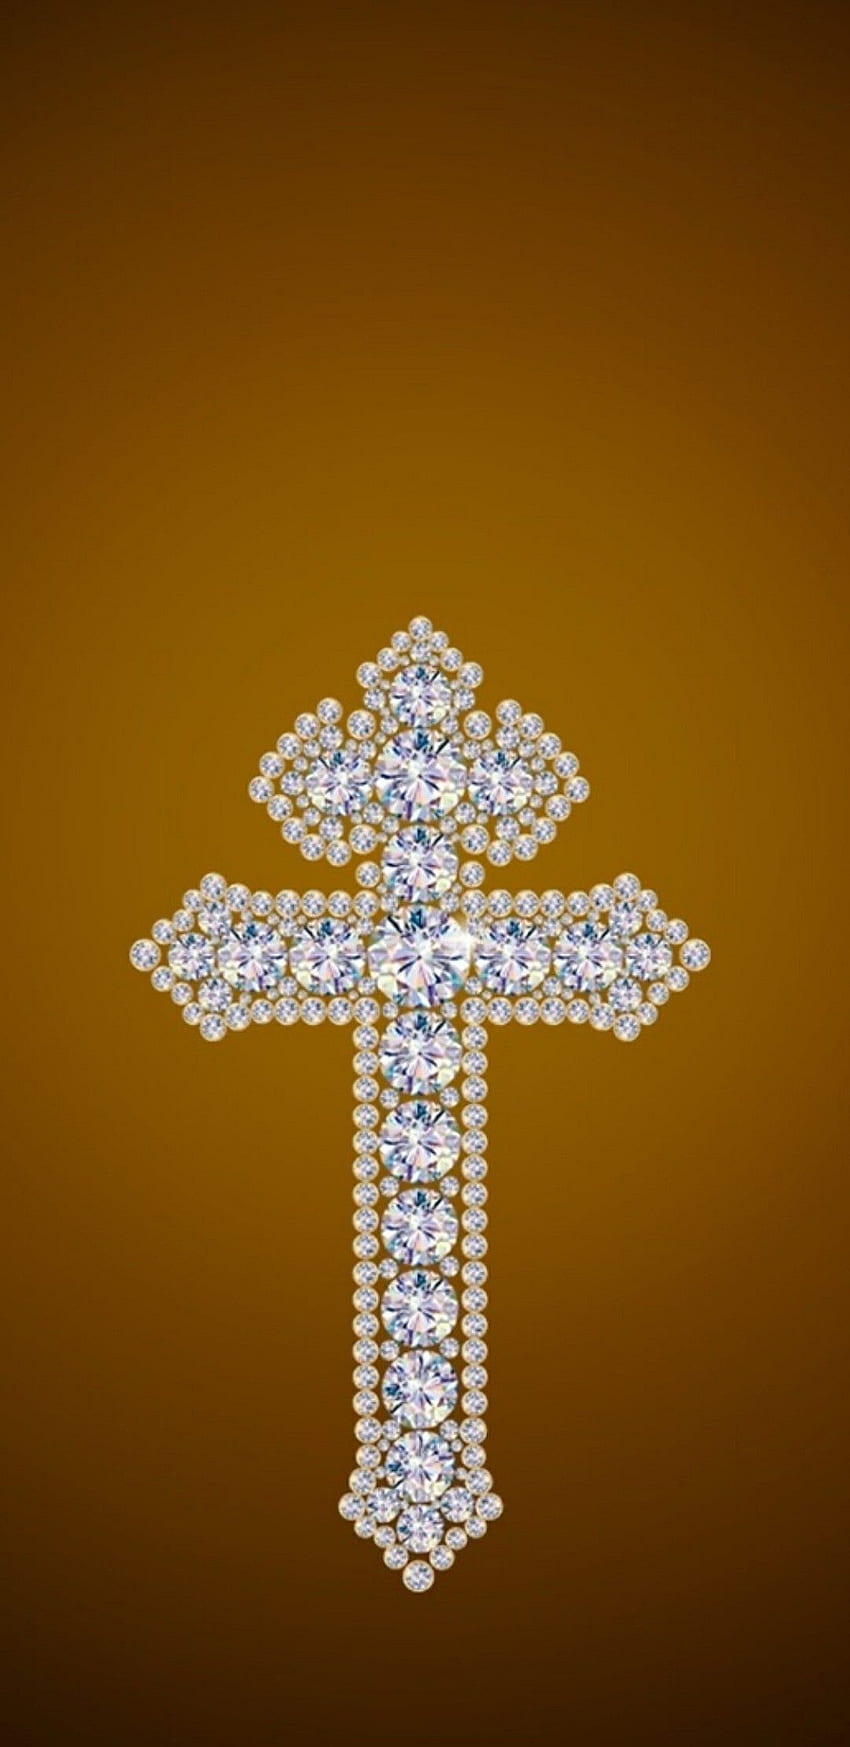 Netter Kreuzzeichen-Hintergrund (Seite 1), Girly christliches Kreuz HD-Handy-Hintergrundbild